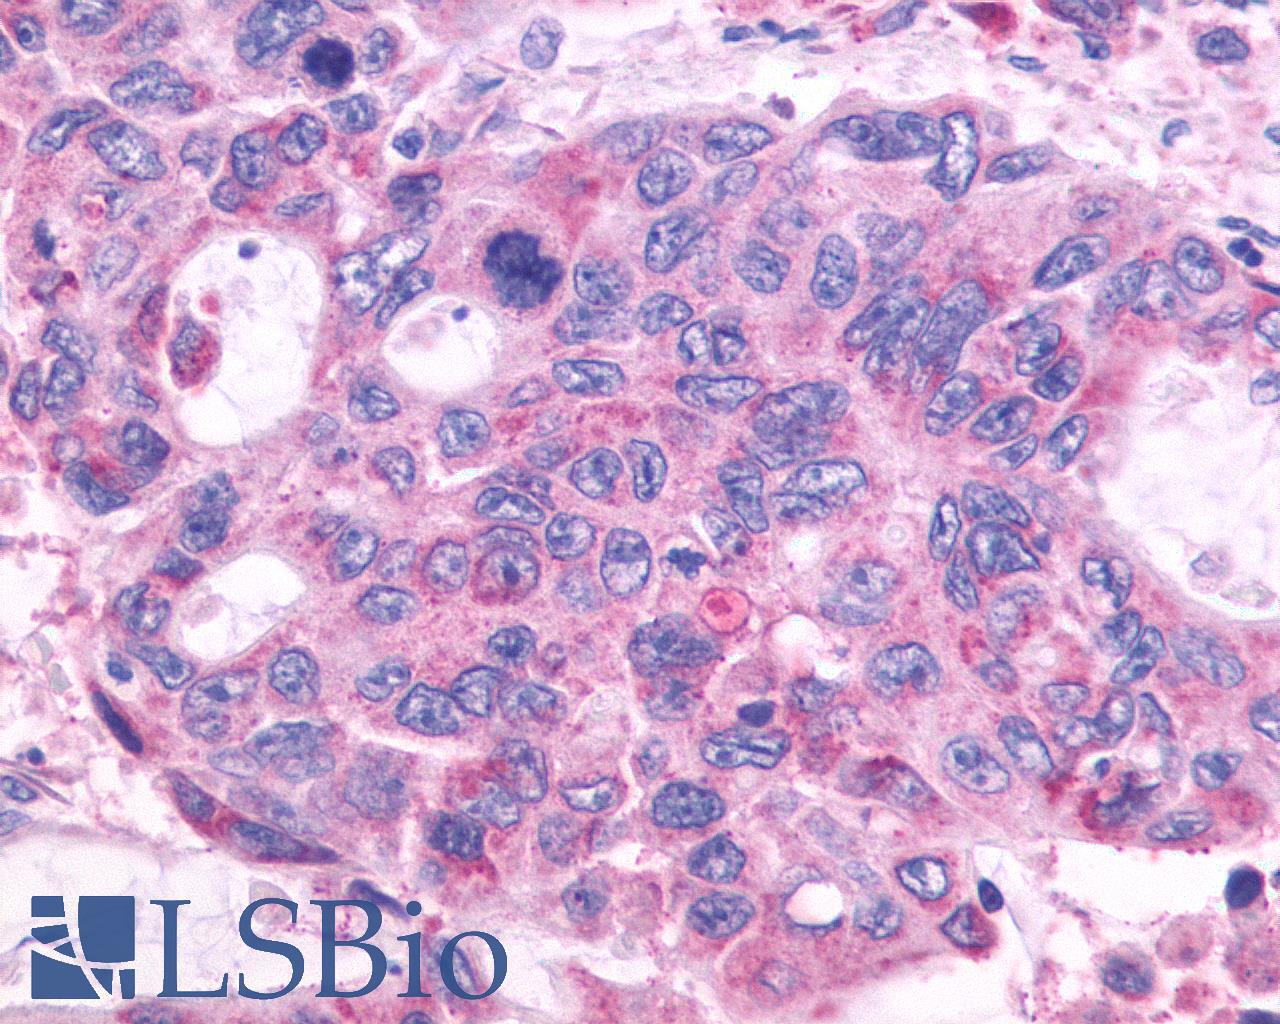 GPR150 Antibody - Colon, Carcinoma